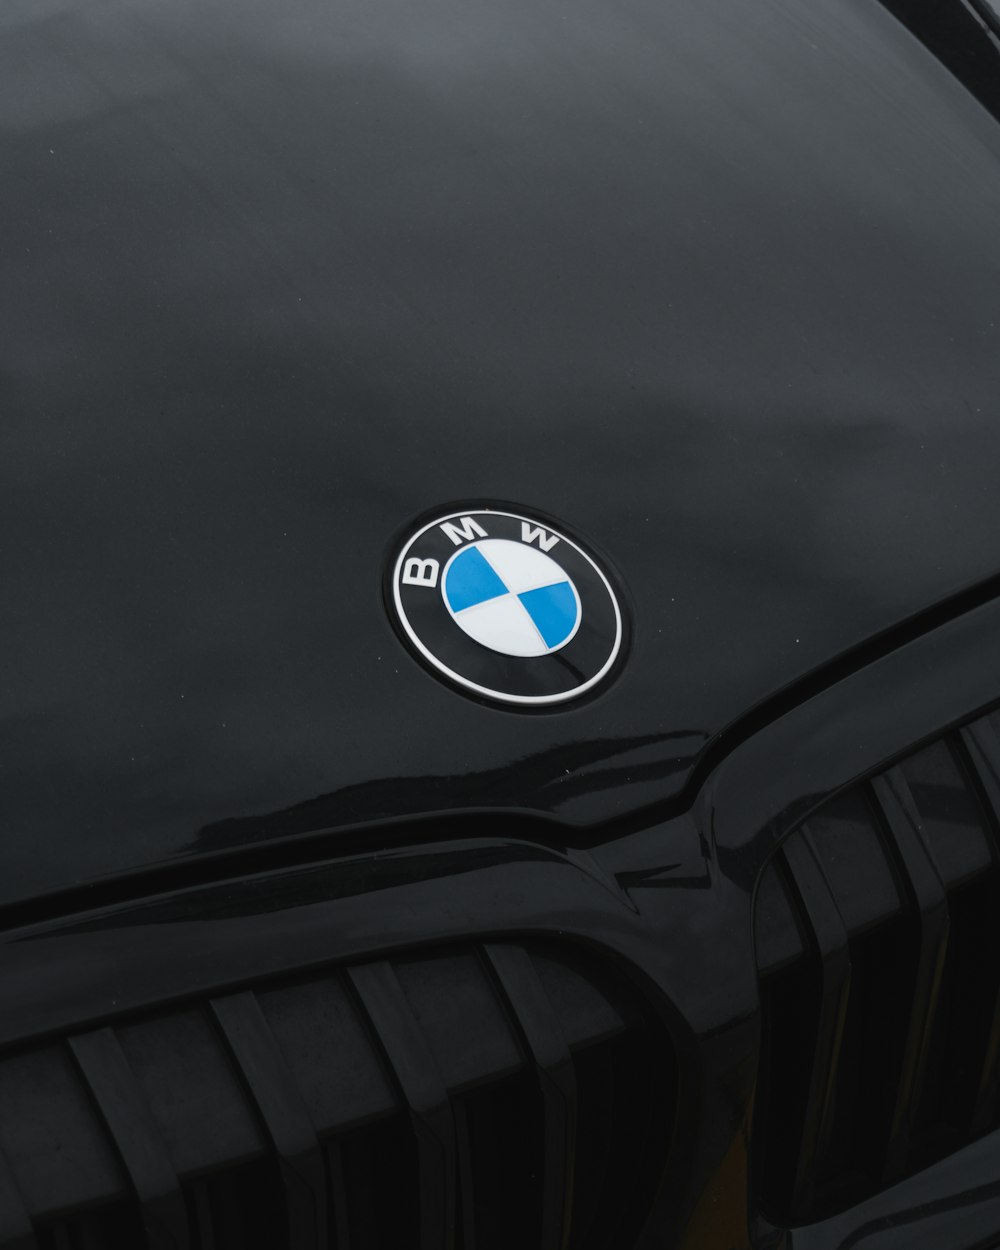 a close up of a bmw emblem on a car